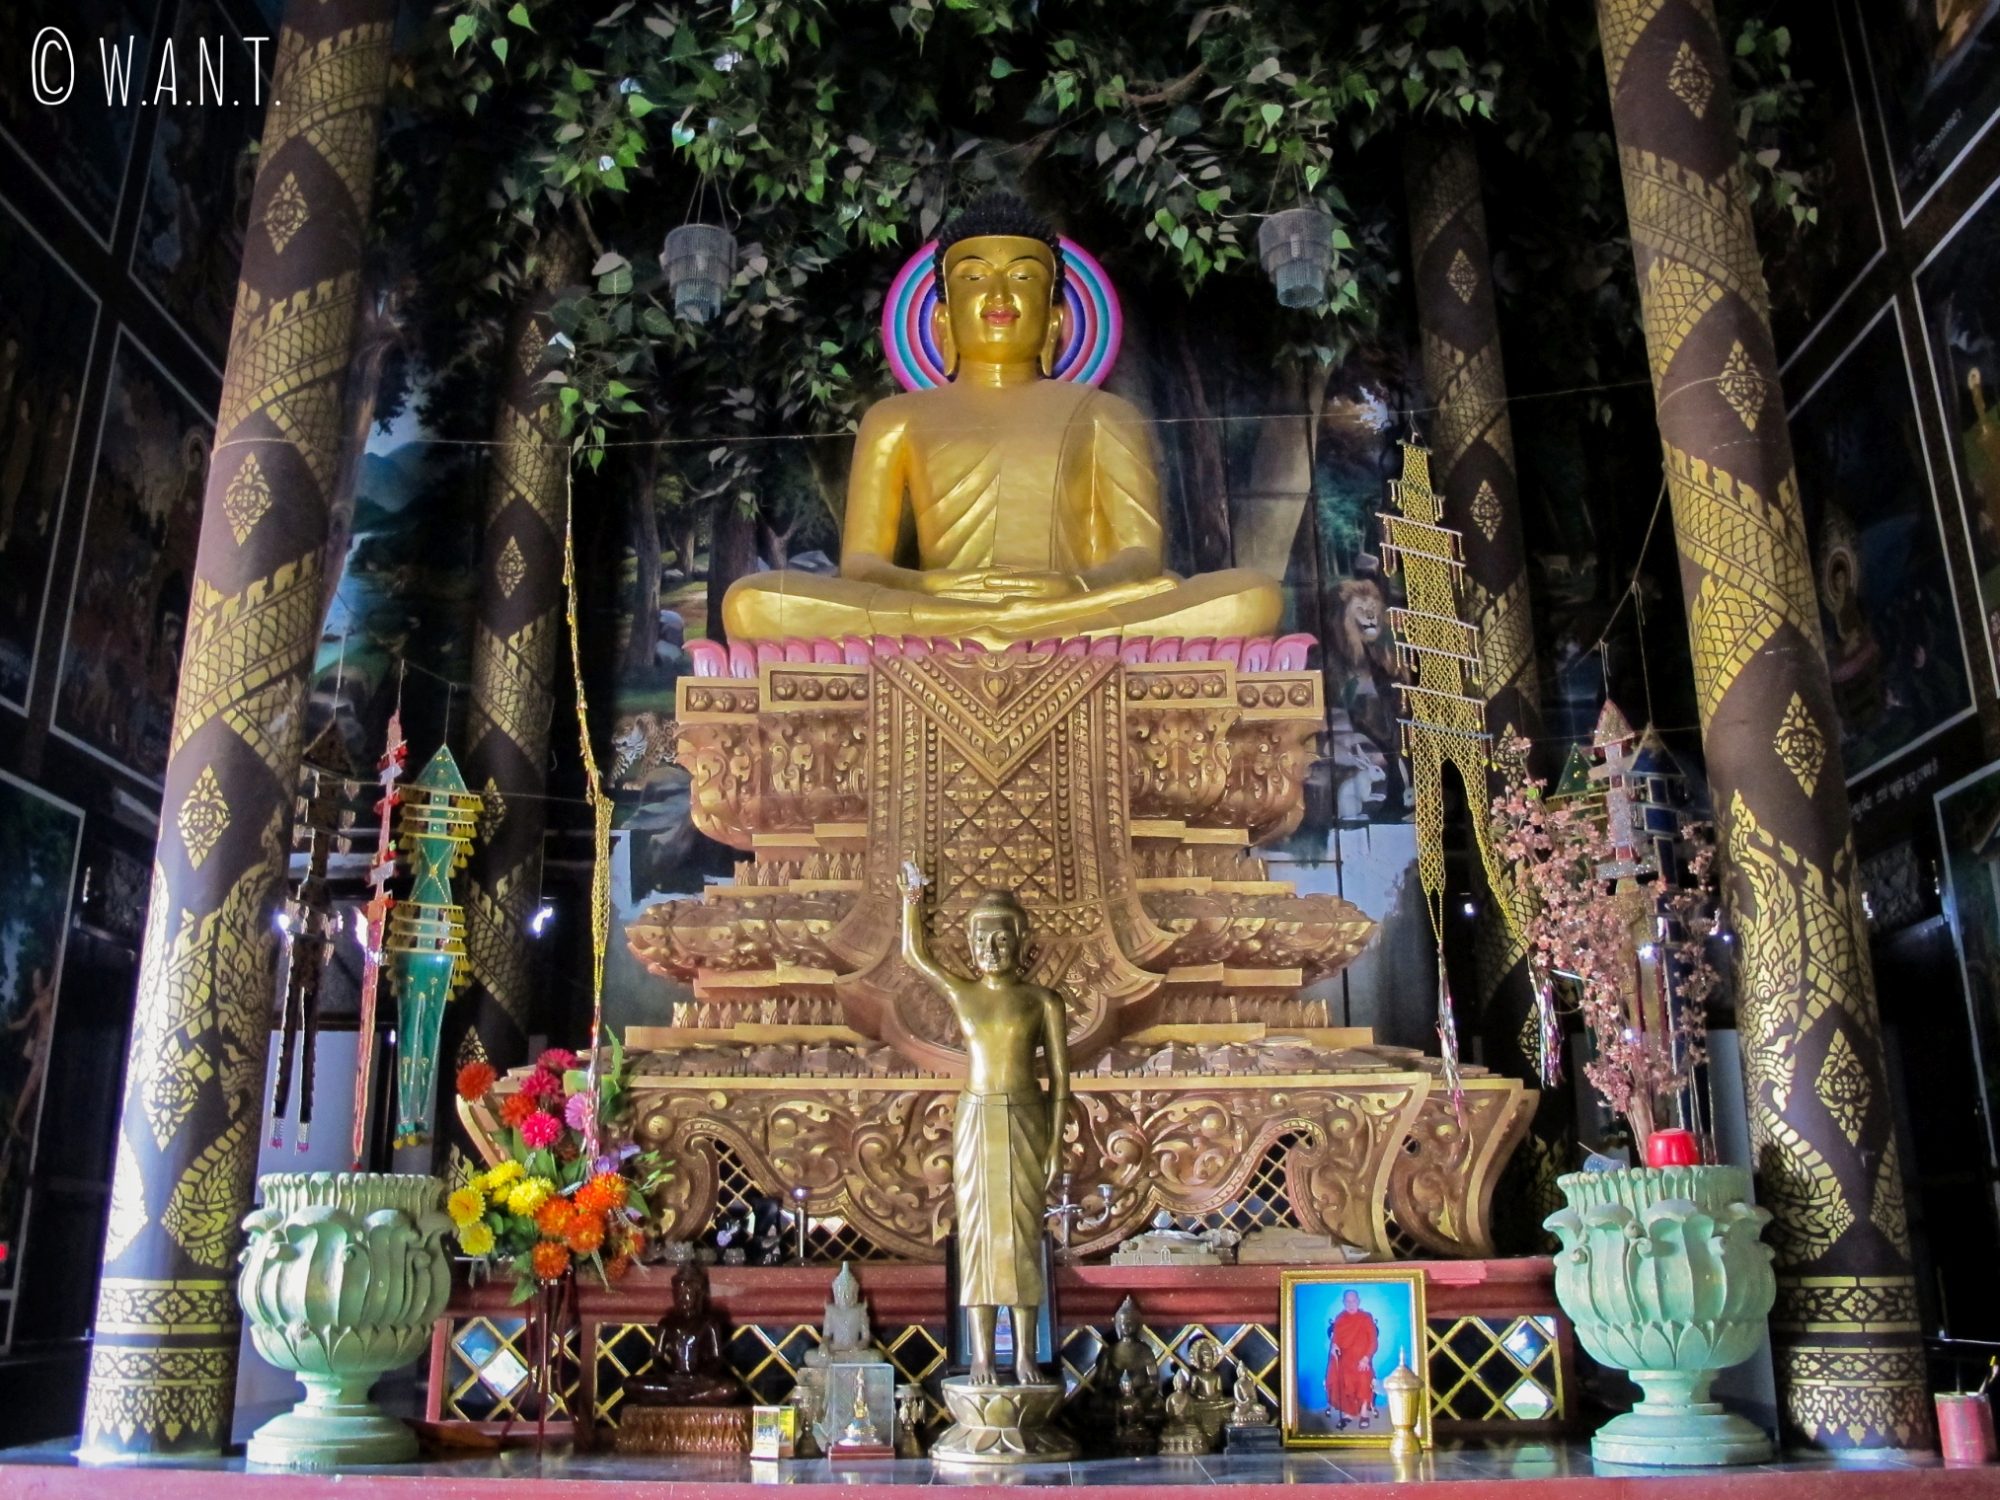 A l'intérieur du monastère du Cambodge situé à Lumbini, Bouddha est représenté sous le Bodhi tree